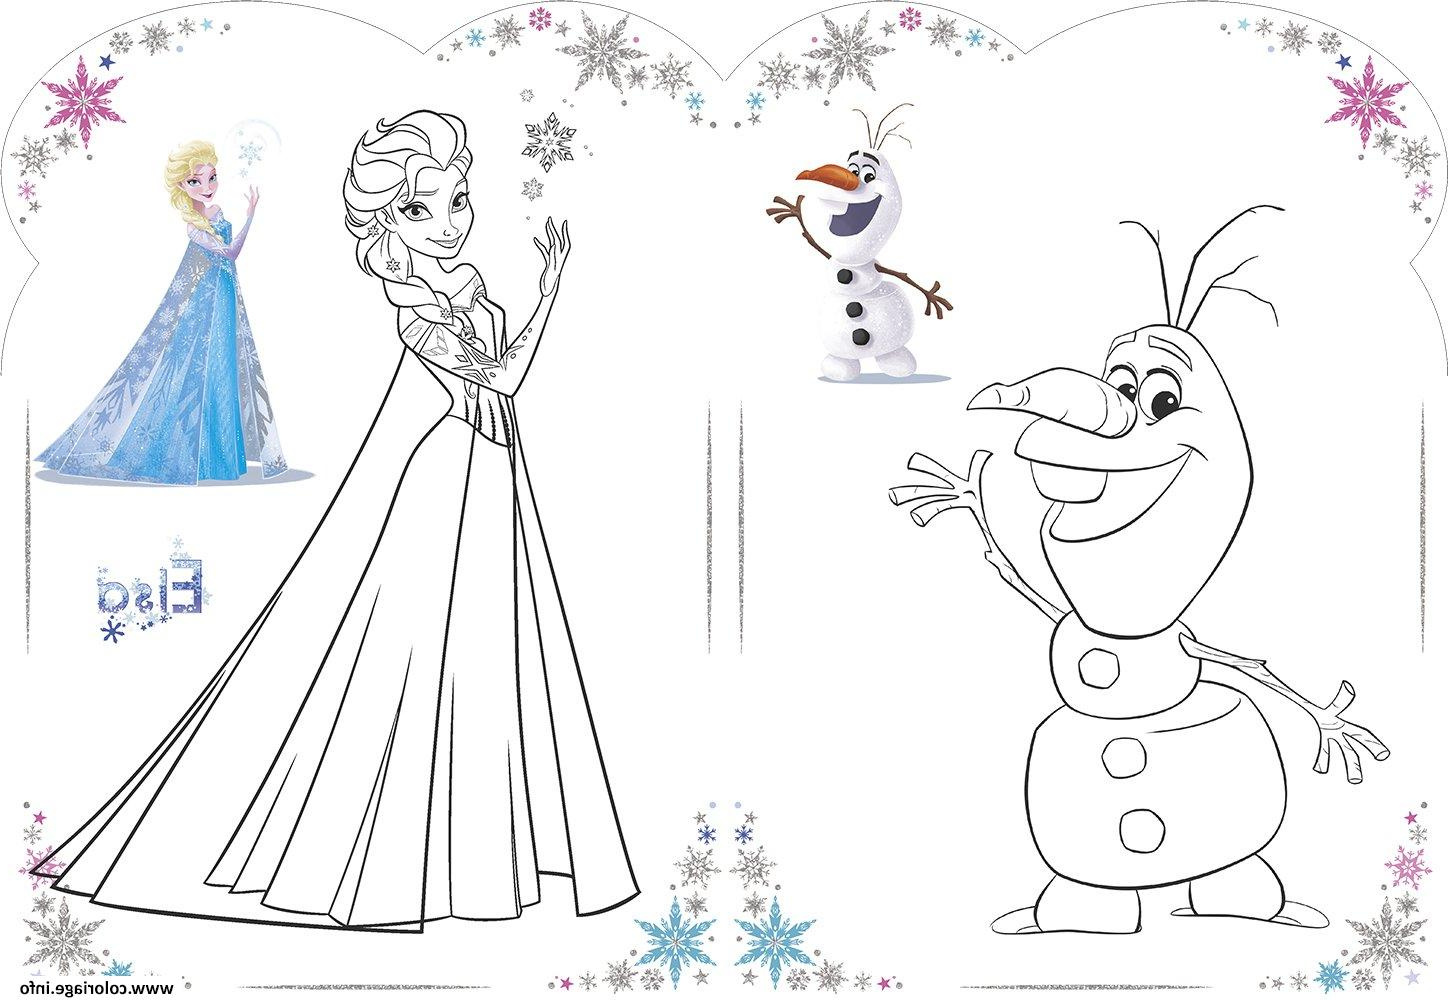 Coloriage Elsa Reine Des Neiges Beau Stock Coloriage Olaf Et Elsa Reine Des Neiges Disney 2018 Dessin